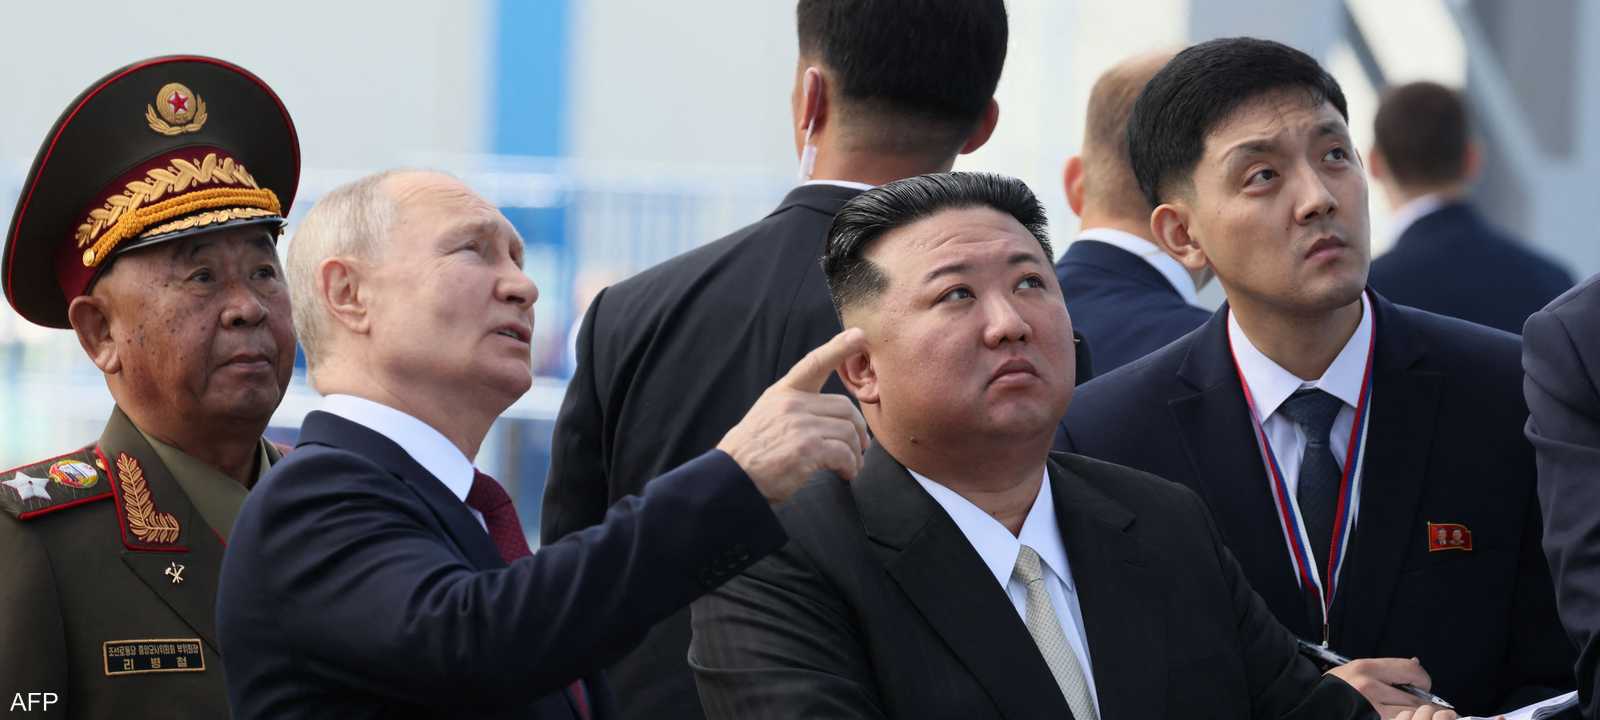 الرئيس الروسي فلاديمير بوتين وزعيم كوريا الشمالية كيم جونغ